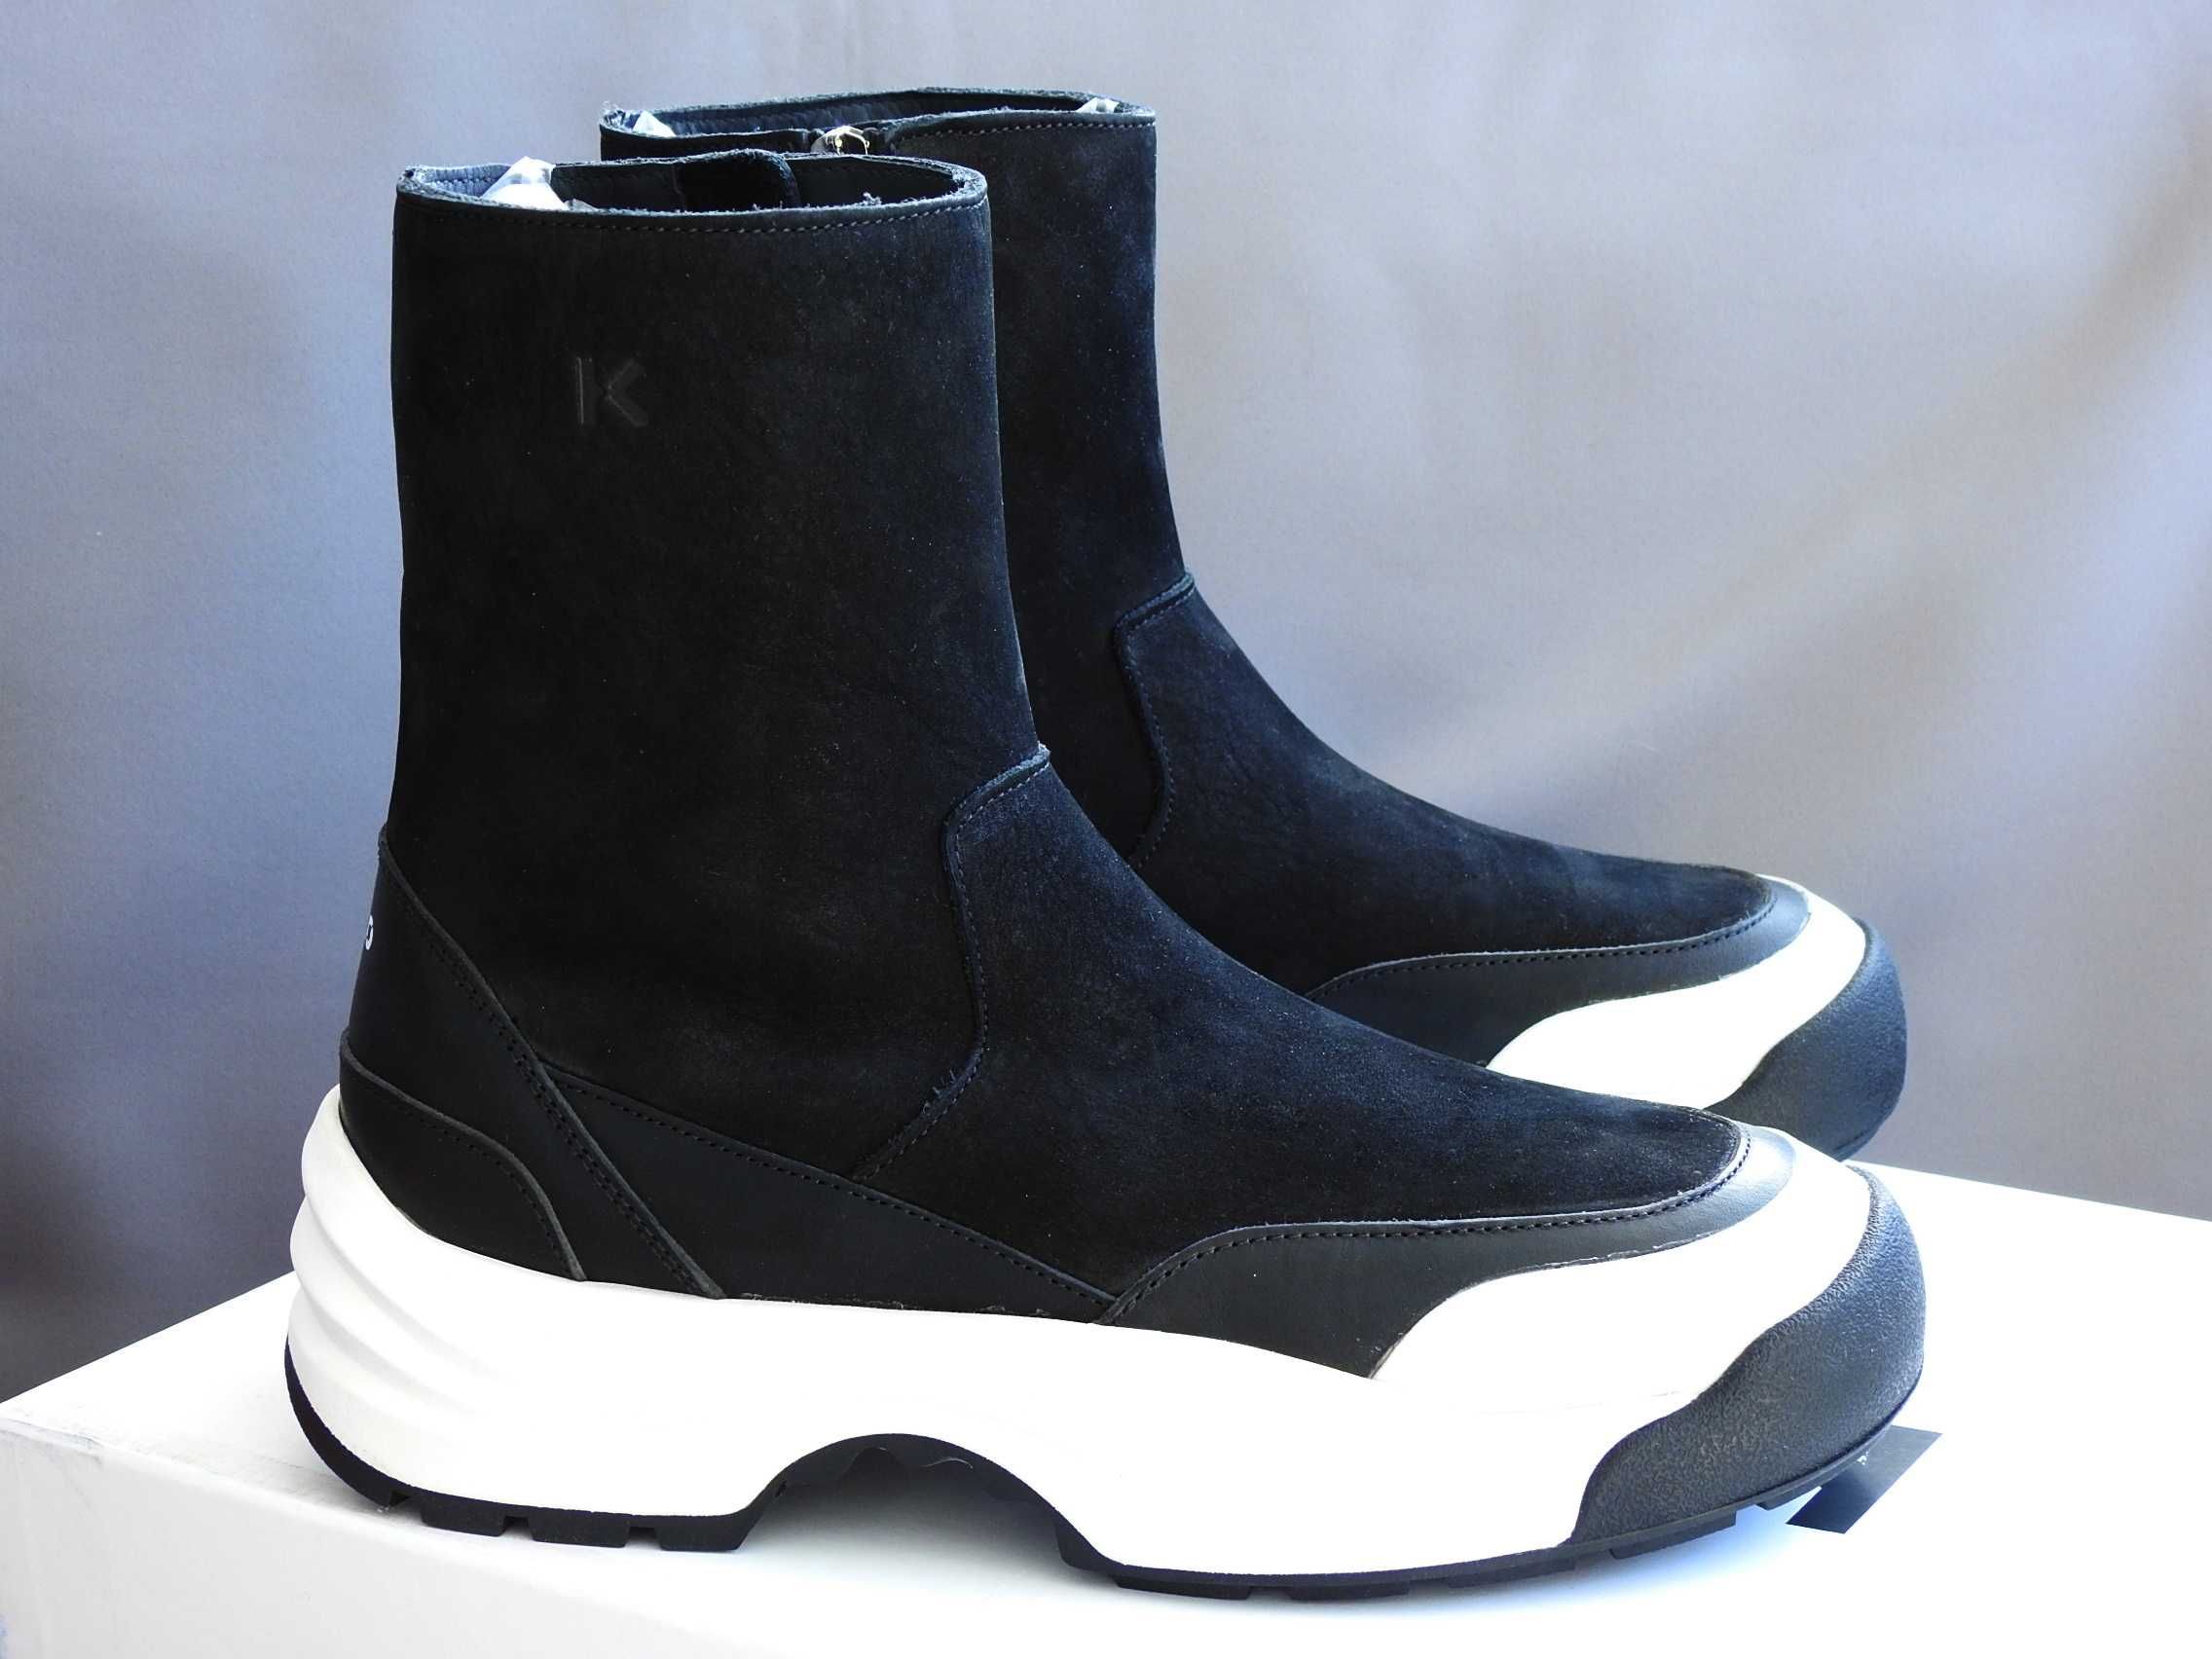 Новые KENZO Италия сапоги ботинки ботильоны 39 кожа $535 оригинал